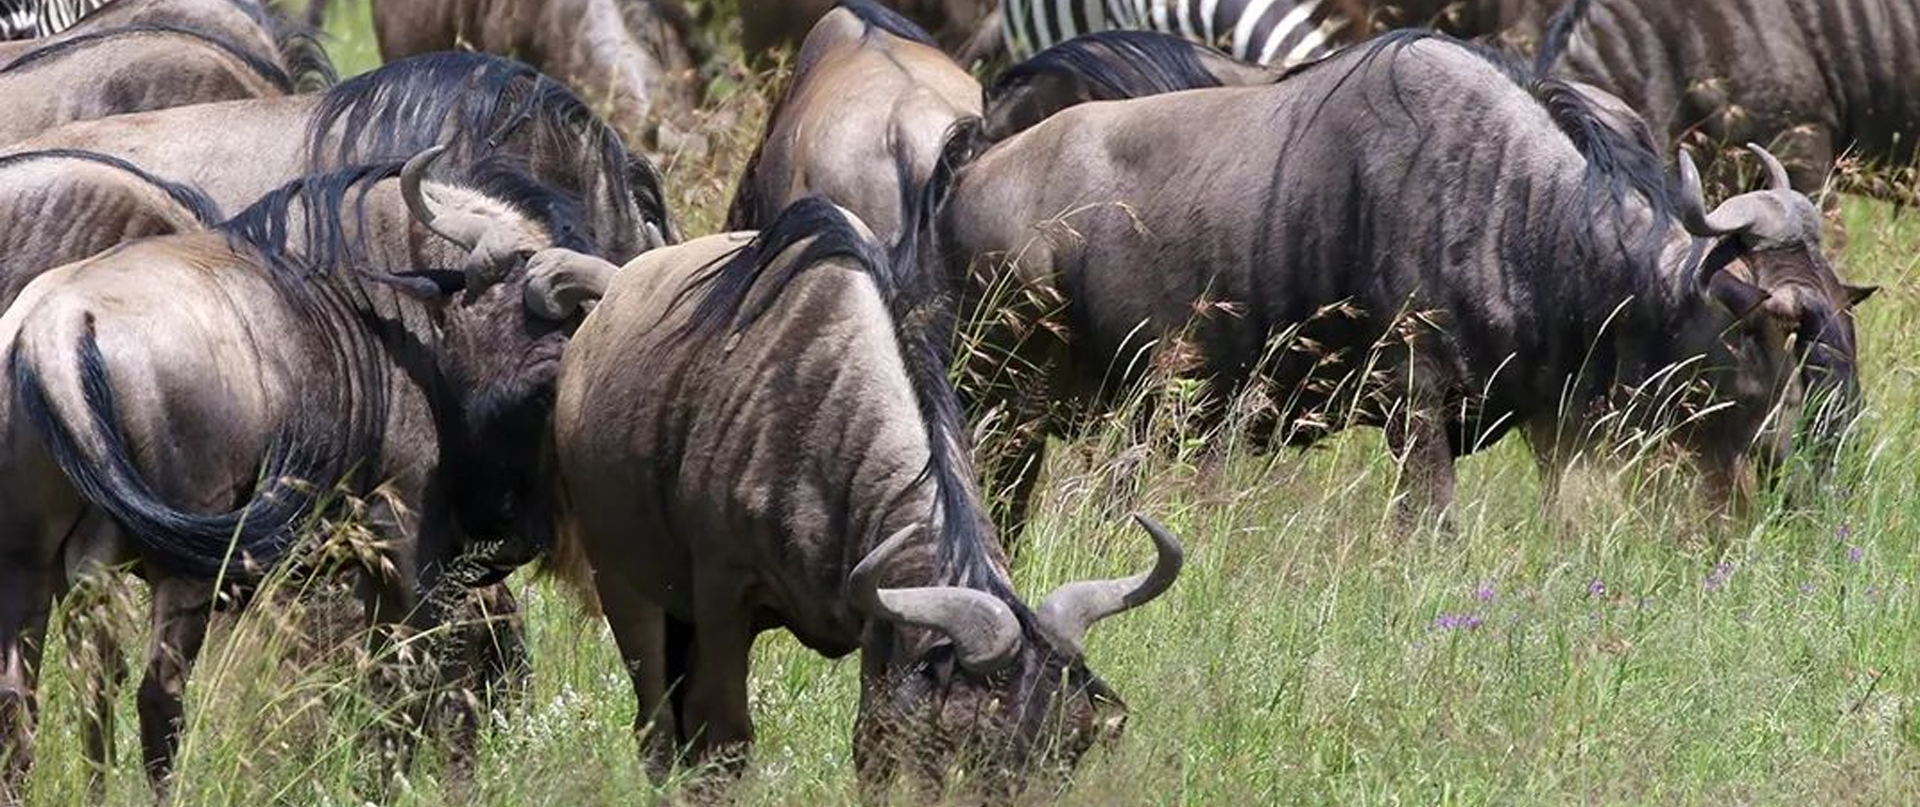 Ultmate Safari from Zanzibar to Serengeti 3 day